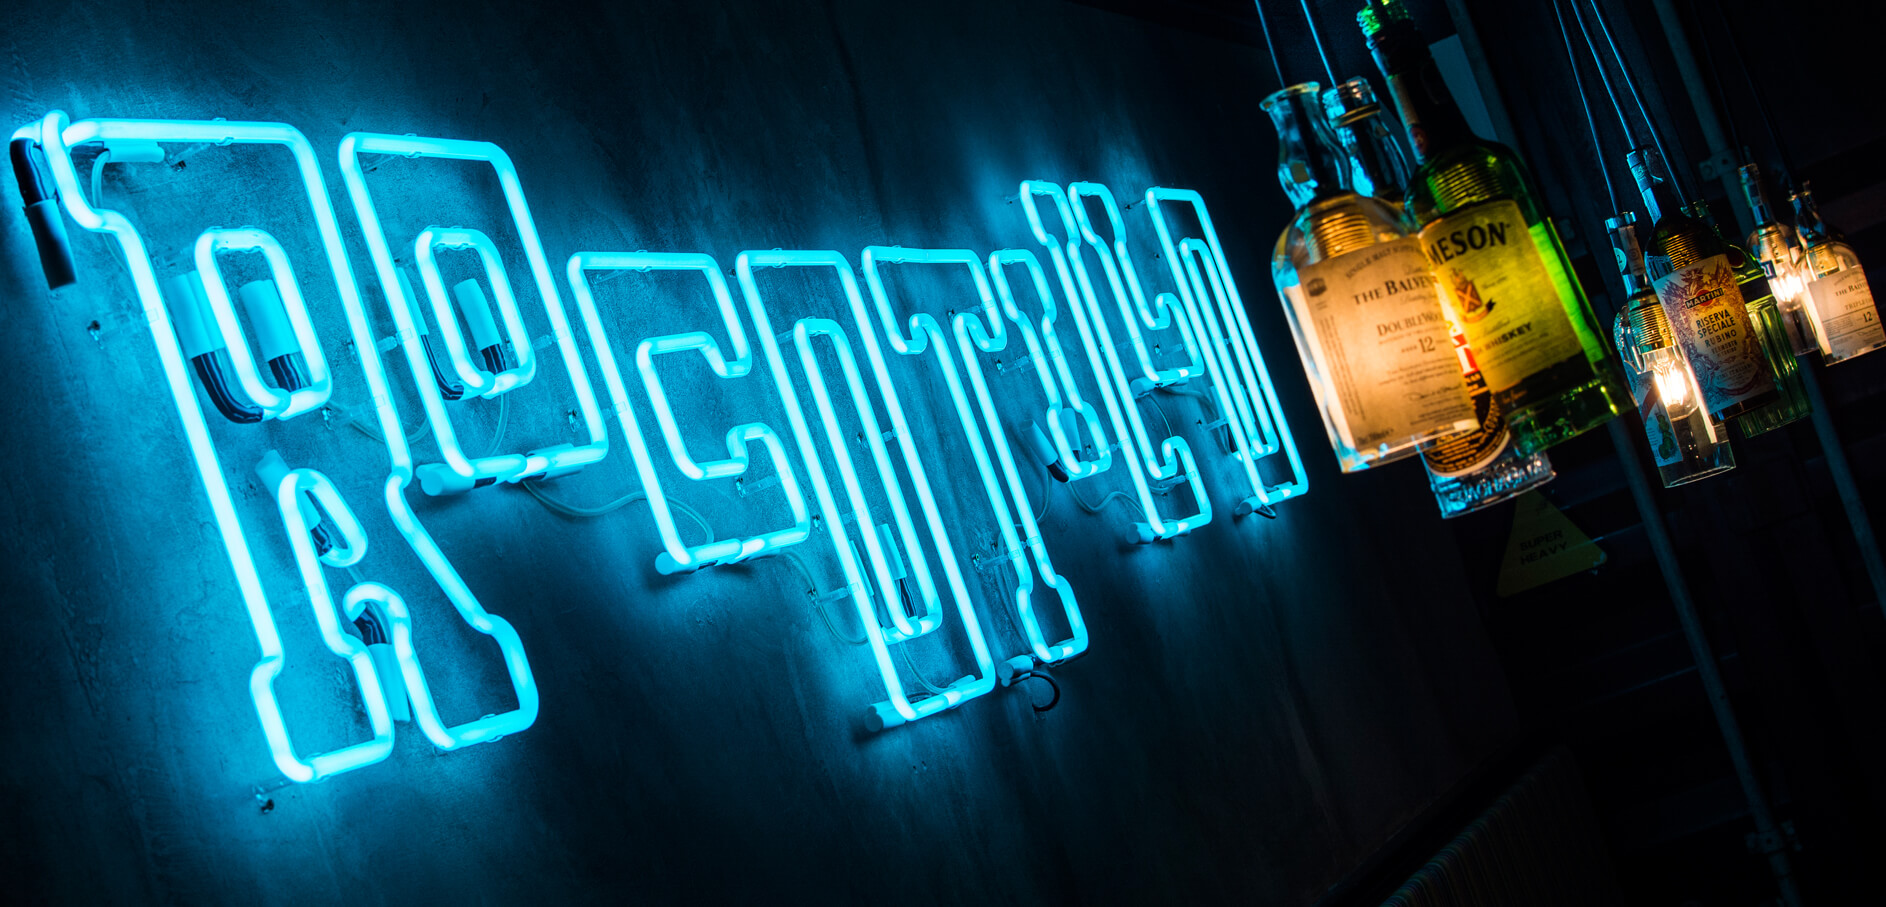 Rocotilli - neon-rocotillo-neon-an-der-Wand-innen-restaurant-neon-an-der-Wand-neon-über-Tische-neon-unter-Licht-neon-an-der-Beton-Wand-neon-glas-neon-logo-sign